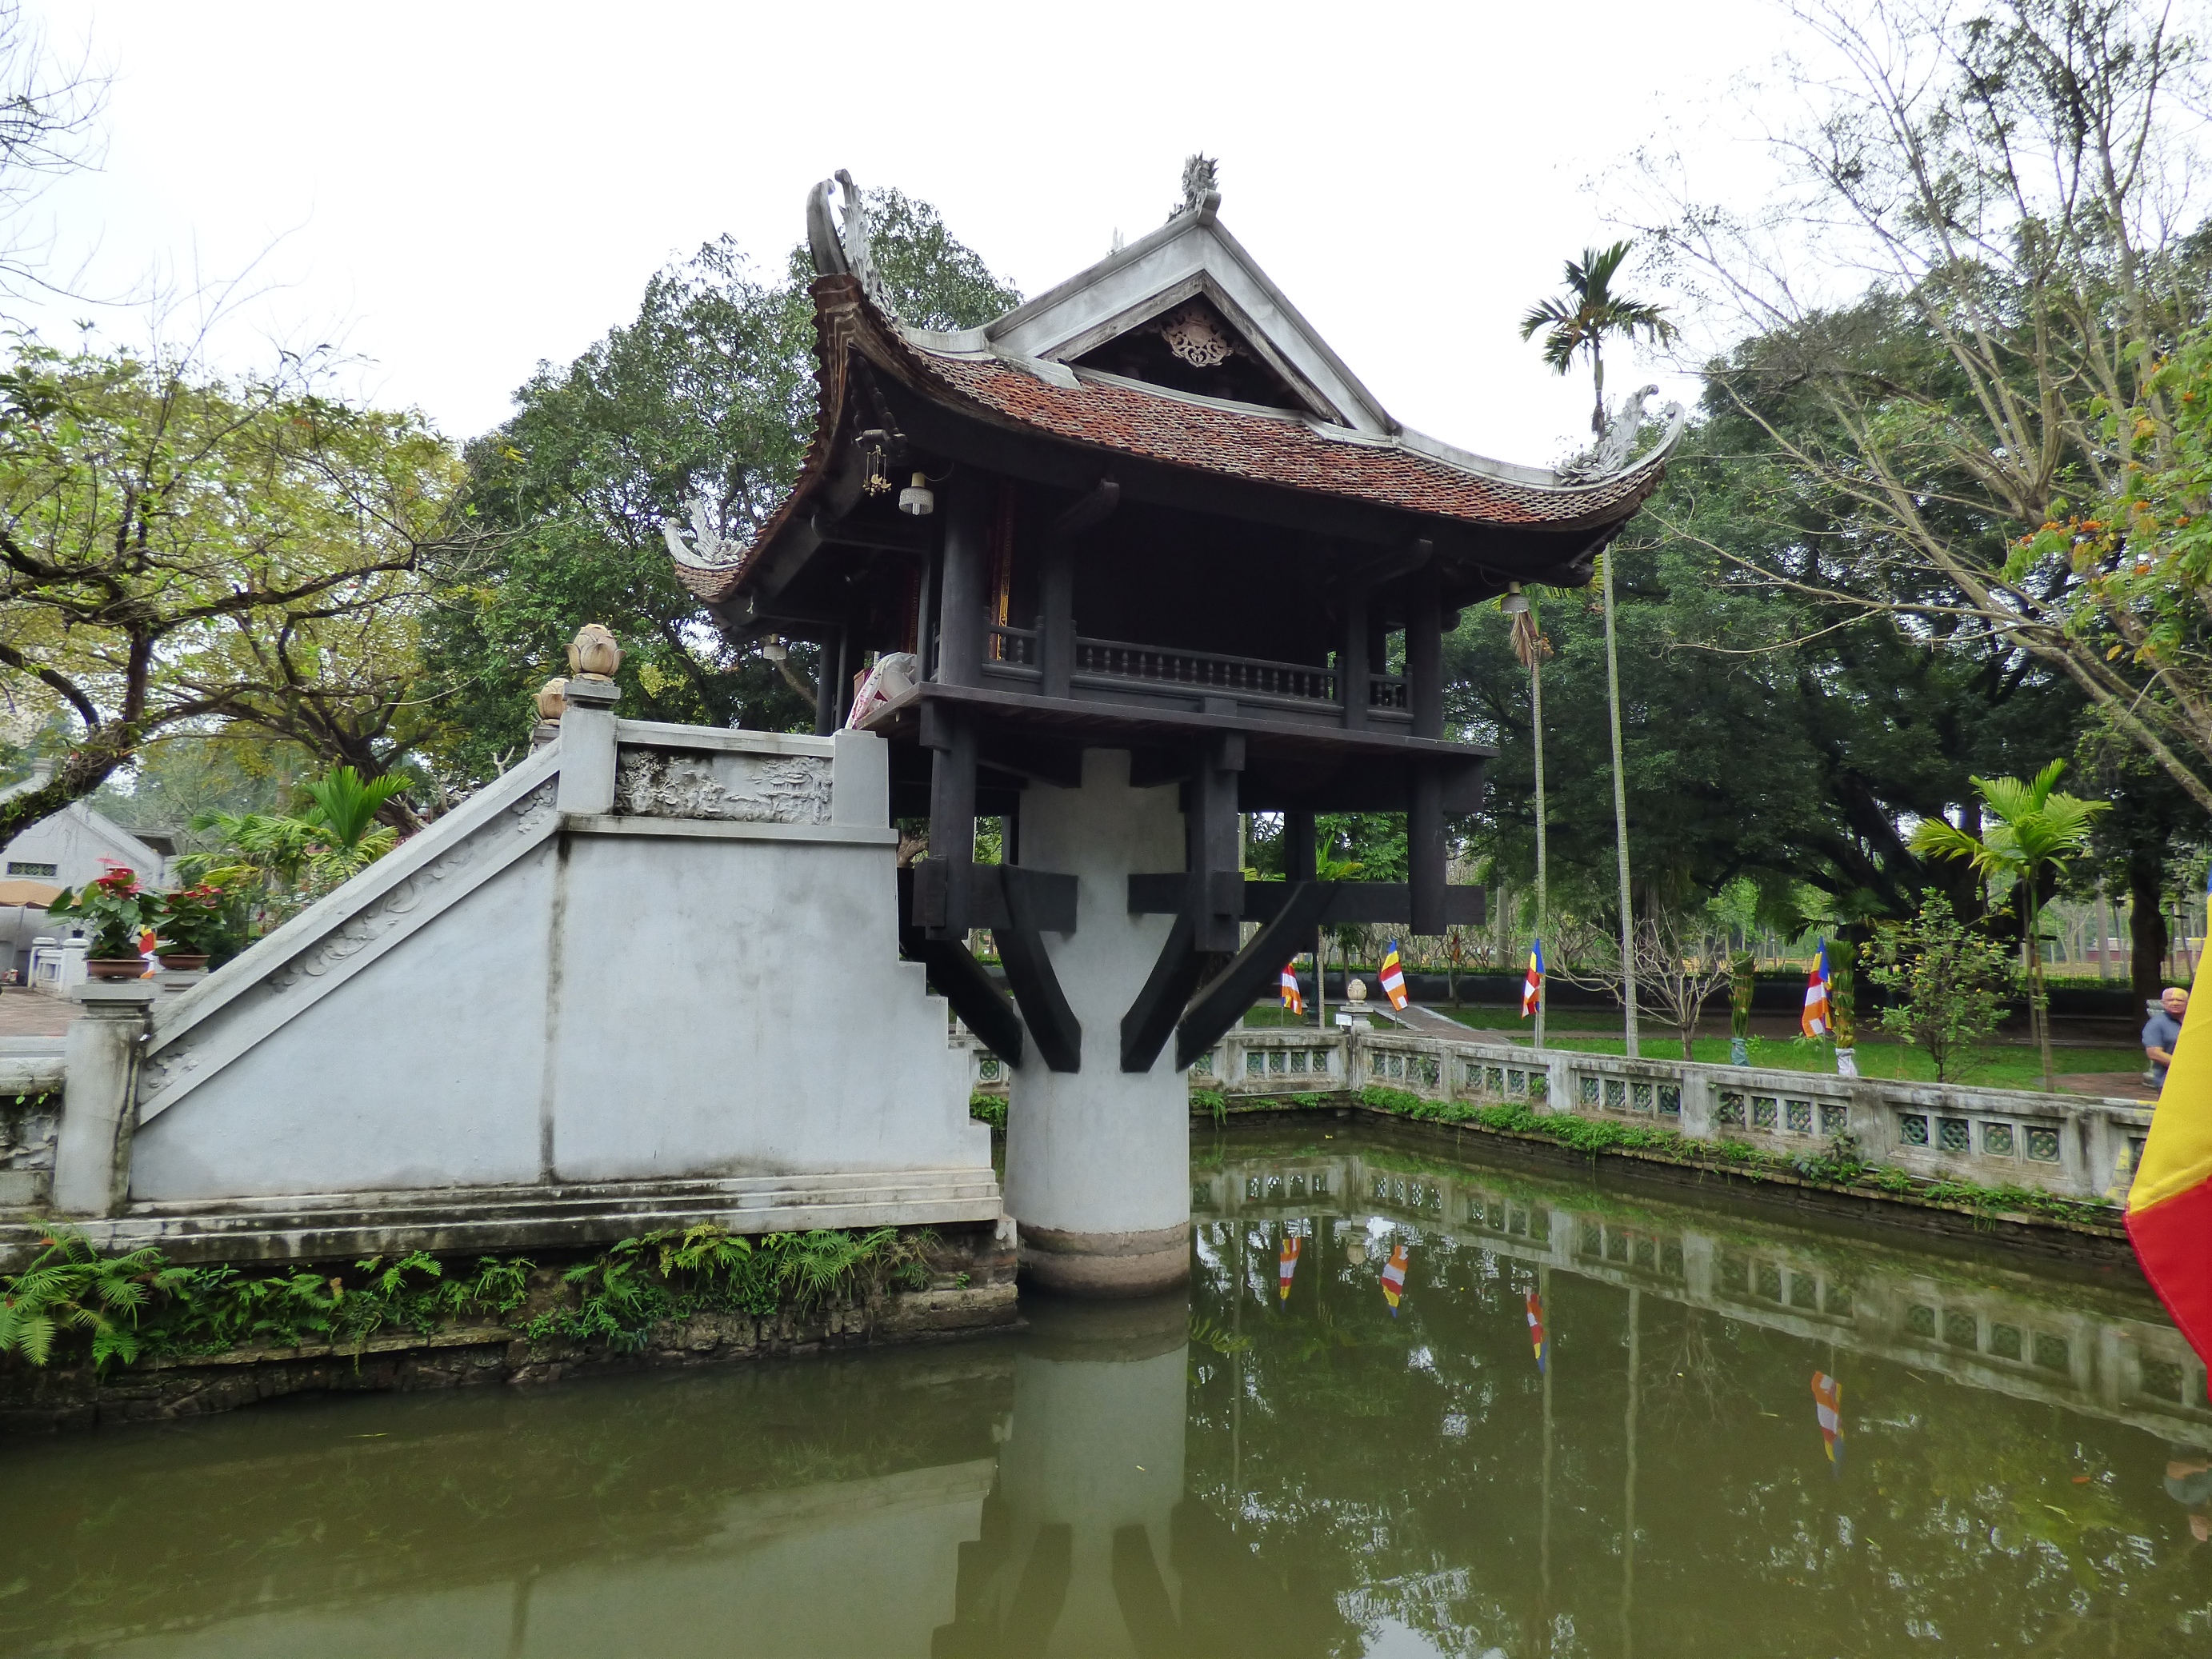 Az Egylábú pagoda, melyet egyetlen lótuszvirág szárához hasonlító betonoszlop támaszt alá.